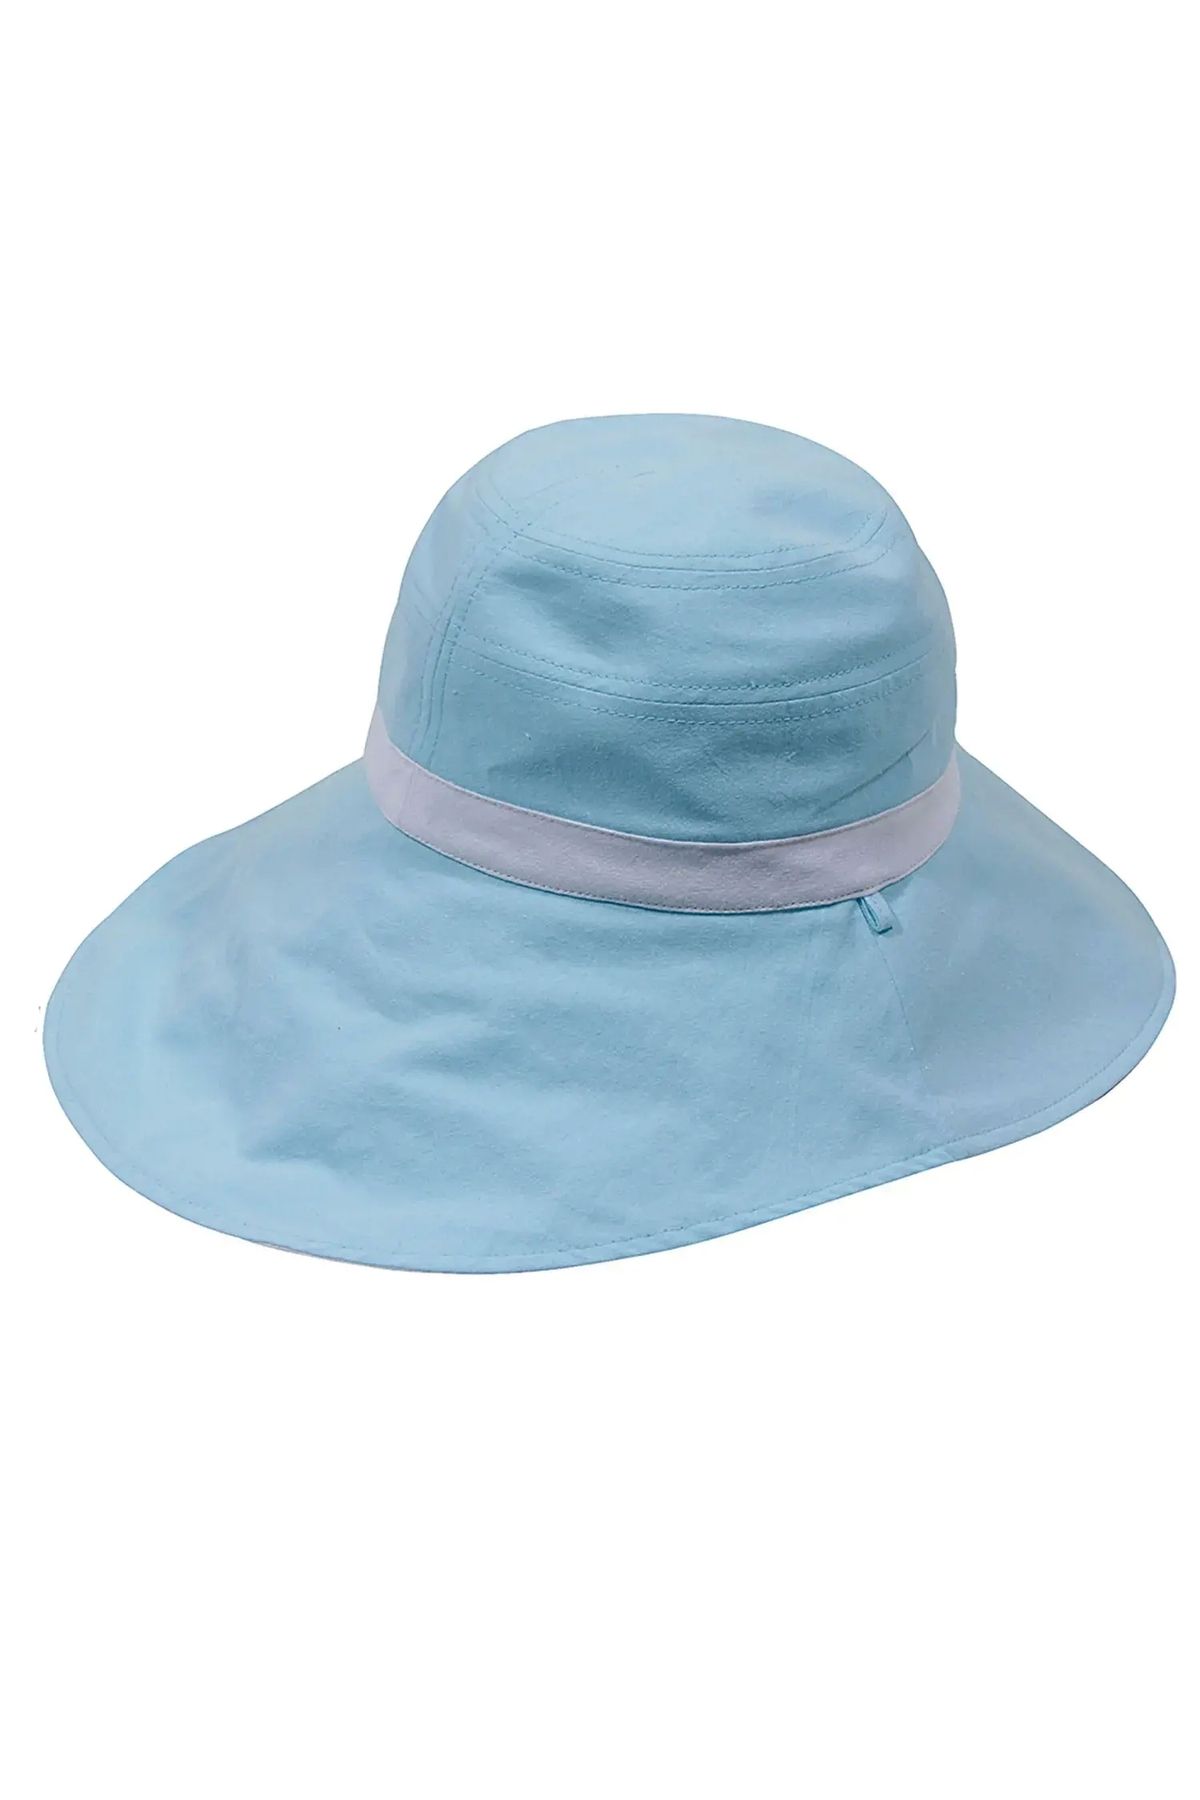 Bay Şapkacı Düz Şerit Kadın Şapka 4069